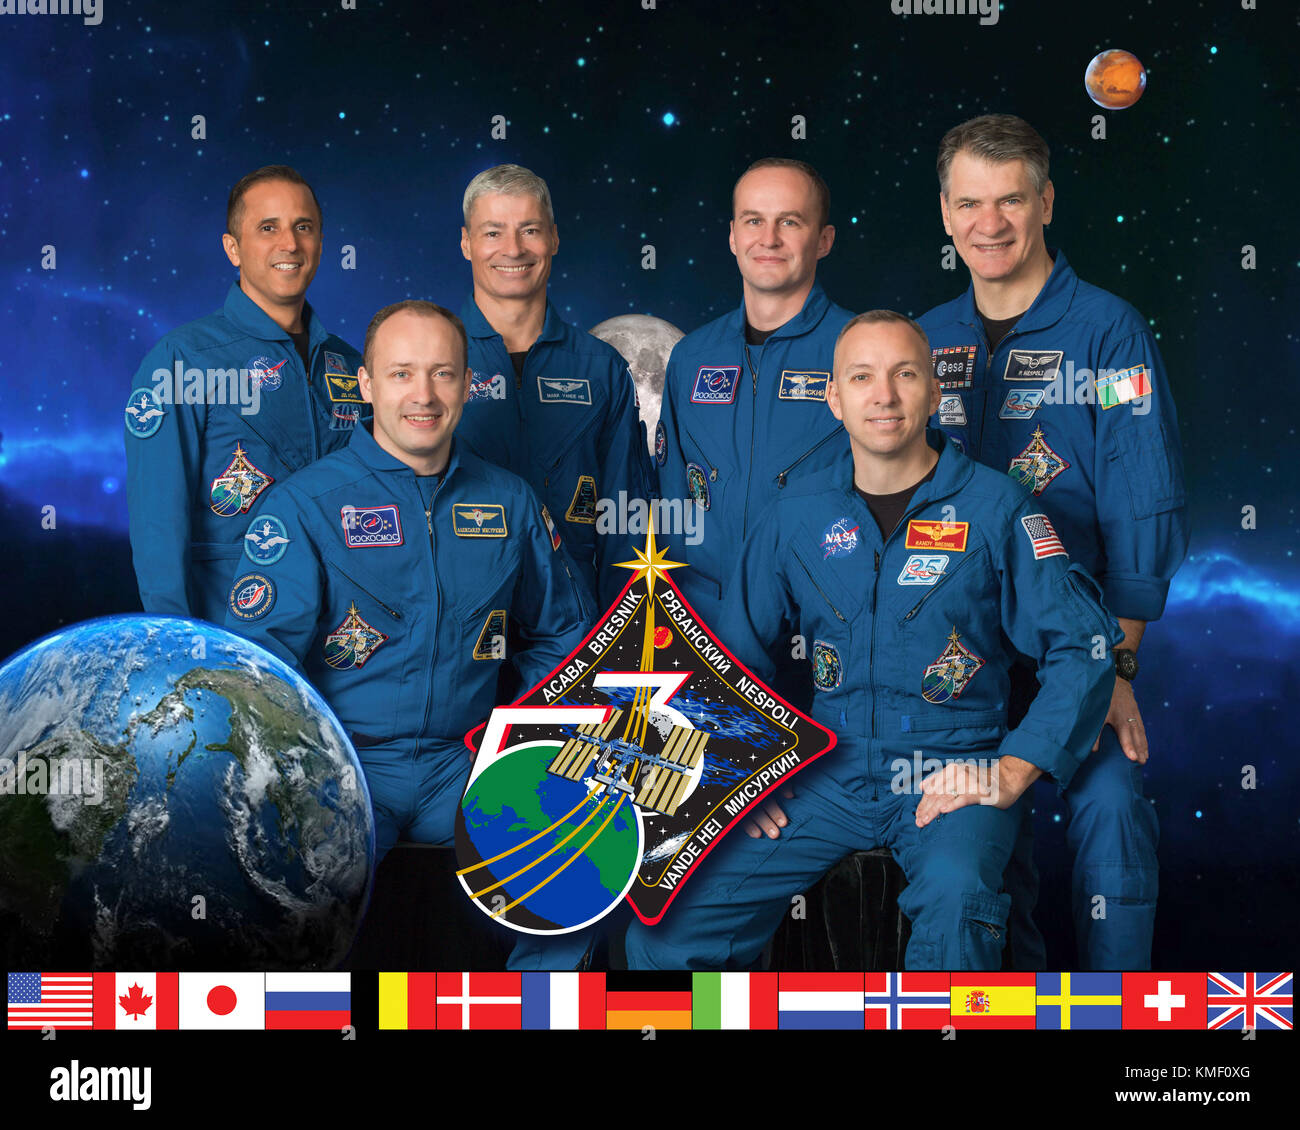 Internationale Raumstation ISS Expedition 53 crew Portrait am Johnson Space Center, 10. Mai 2017 in Houston, Texas. Crew von links nach rechts: Joe acaba, Aleksandr misurkin, Mark vande Hei, Sergey Ryazanskiy, Randy Bresnik und Paolo Nespoli nach links. Stockfoto